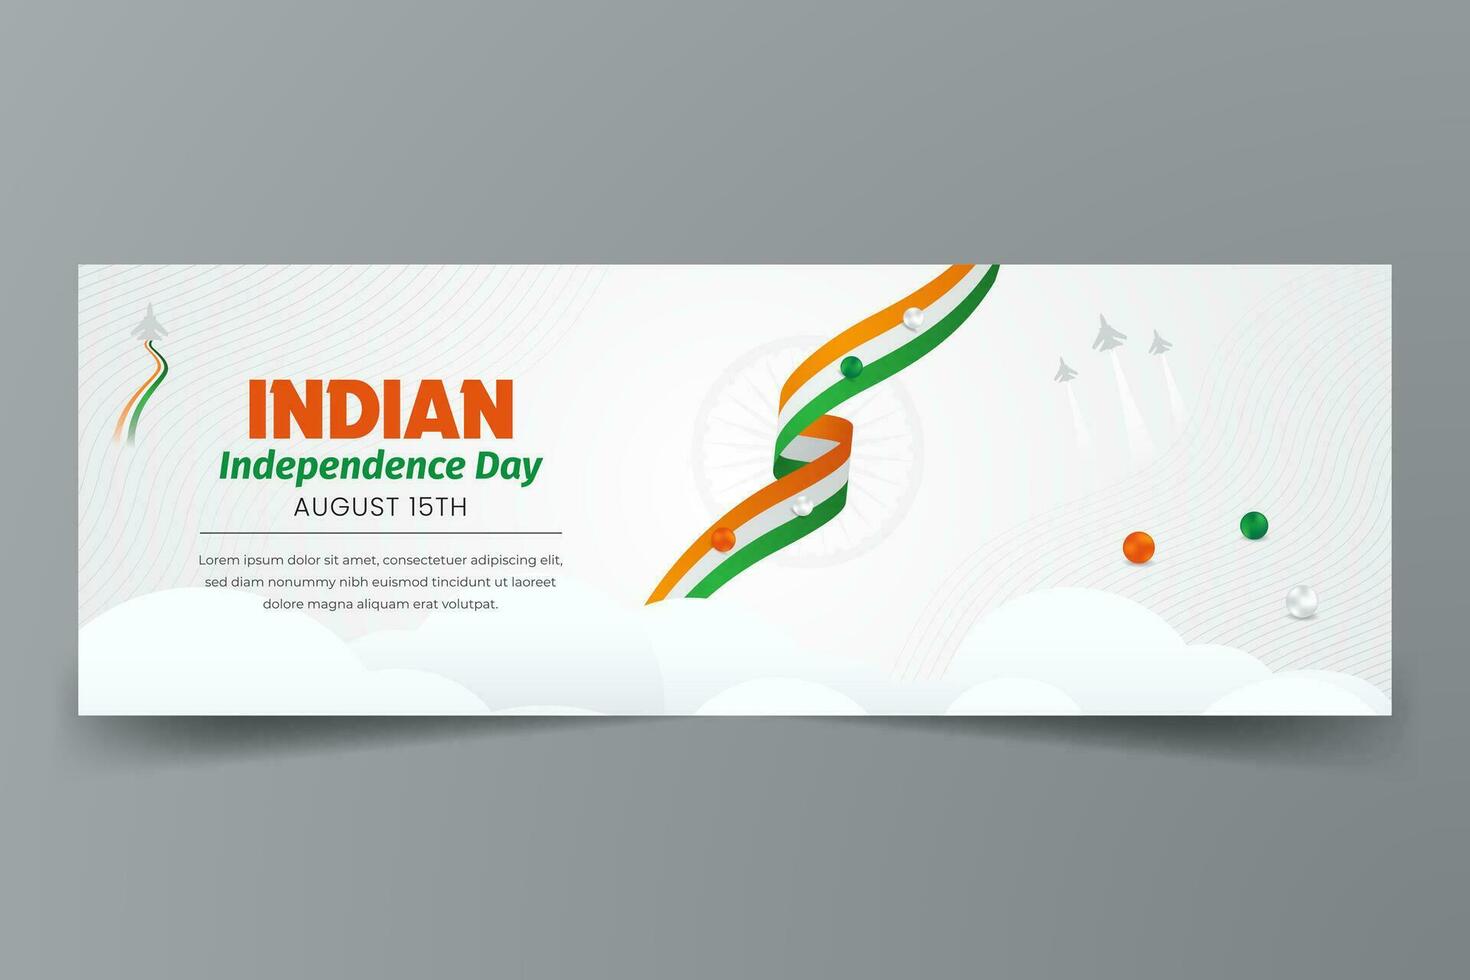 Inde indépendance journée août 15e horizontal bannière avec ruban drapeau illustration vecteur